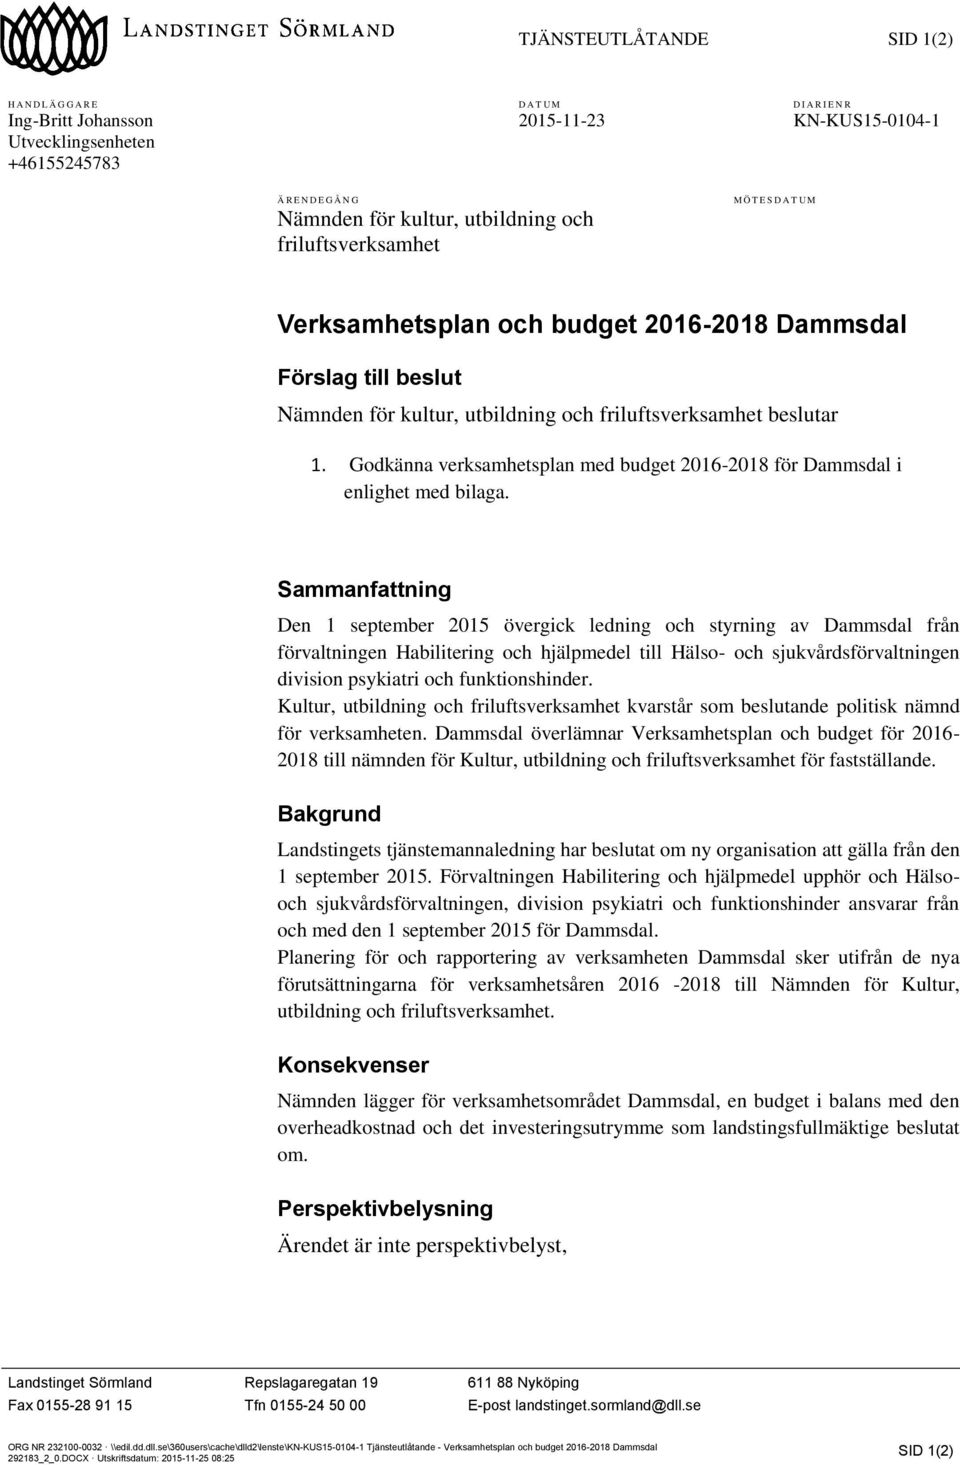 Godkänna verksamhetsplan med budget 2016-2018 för Dammsdal i enlighet med bilaga.